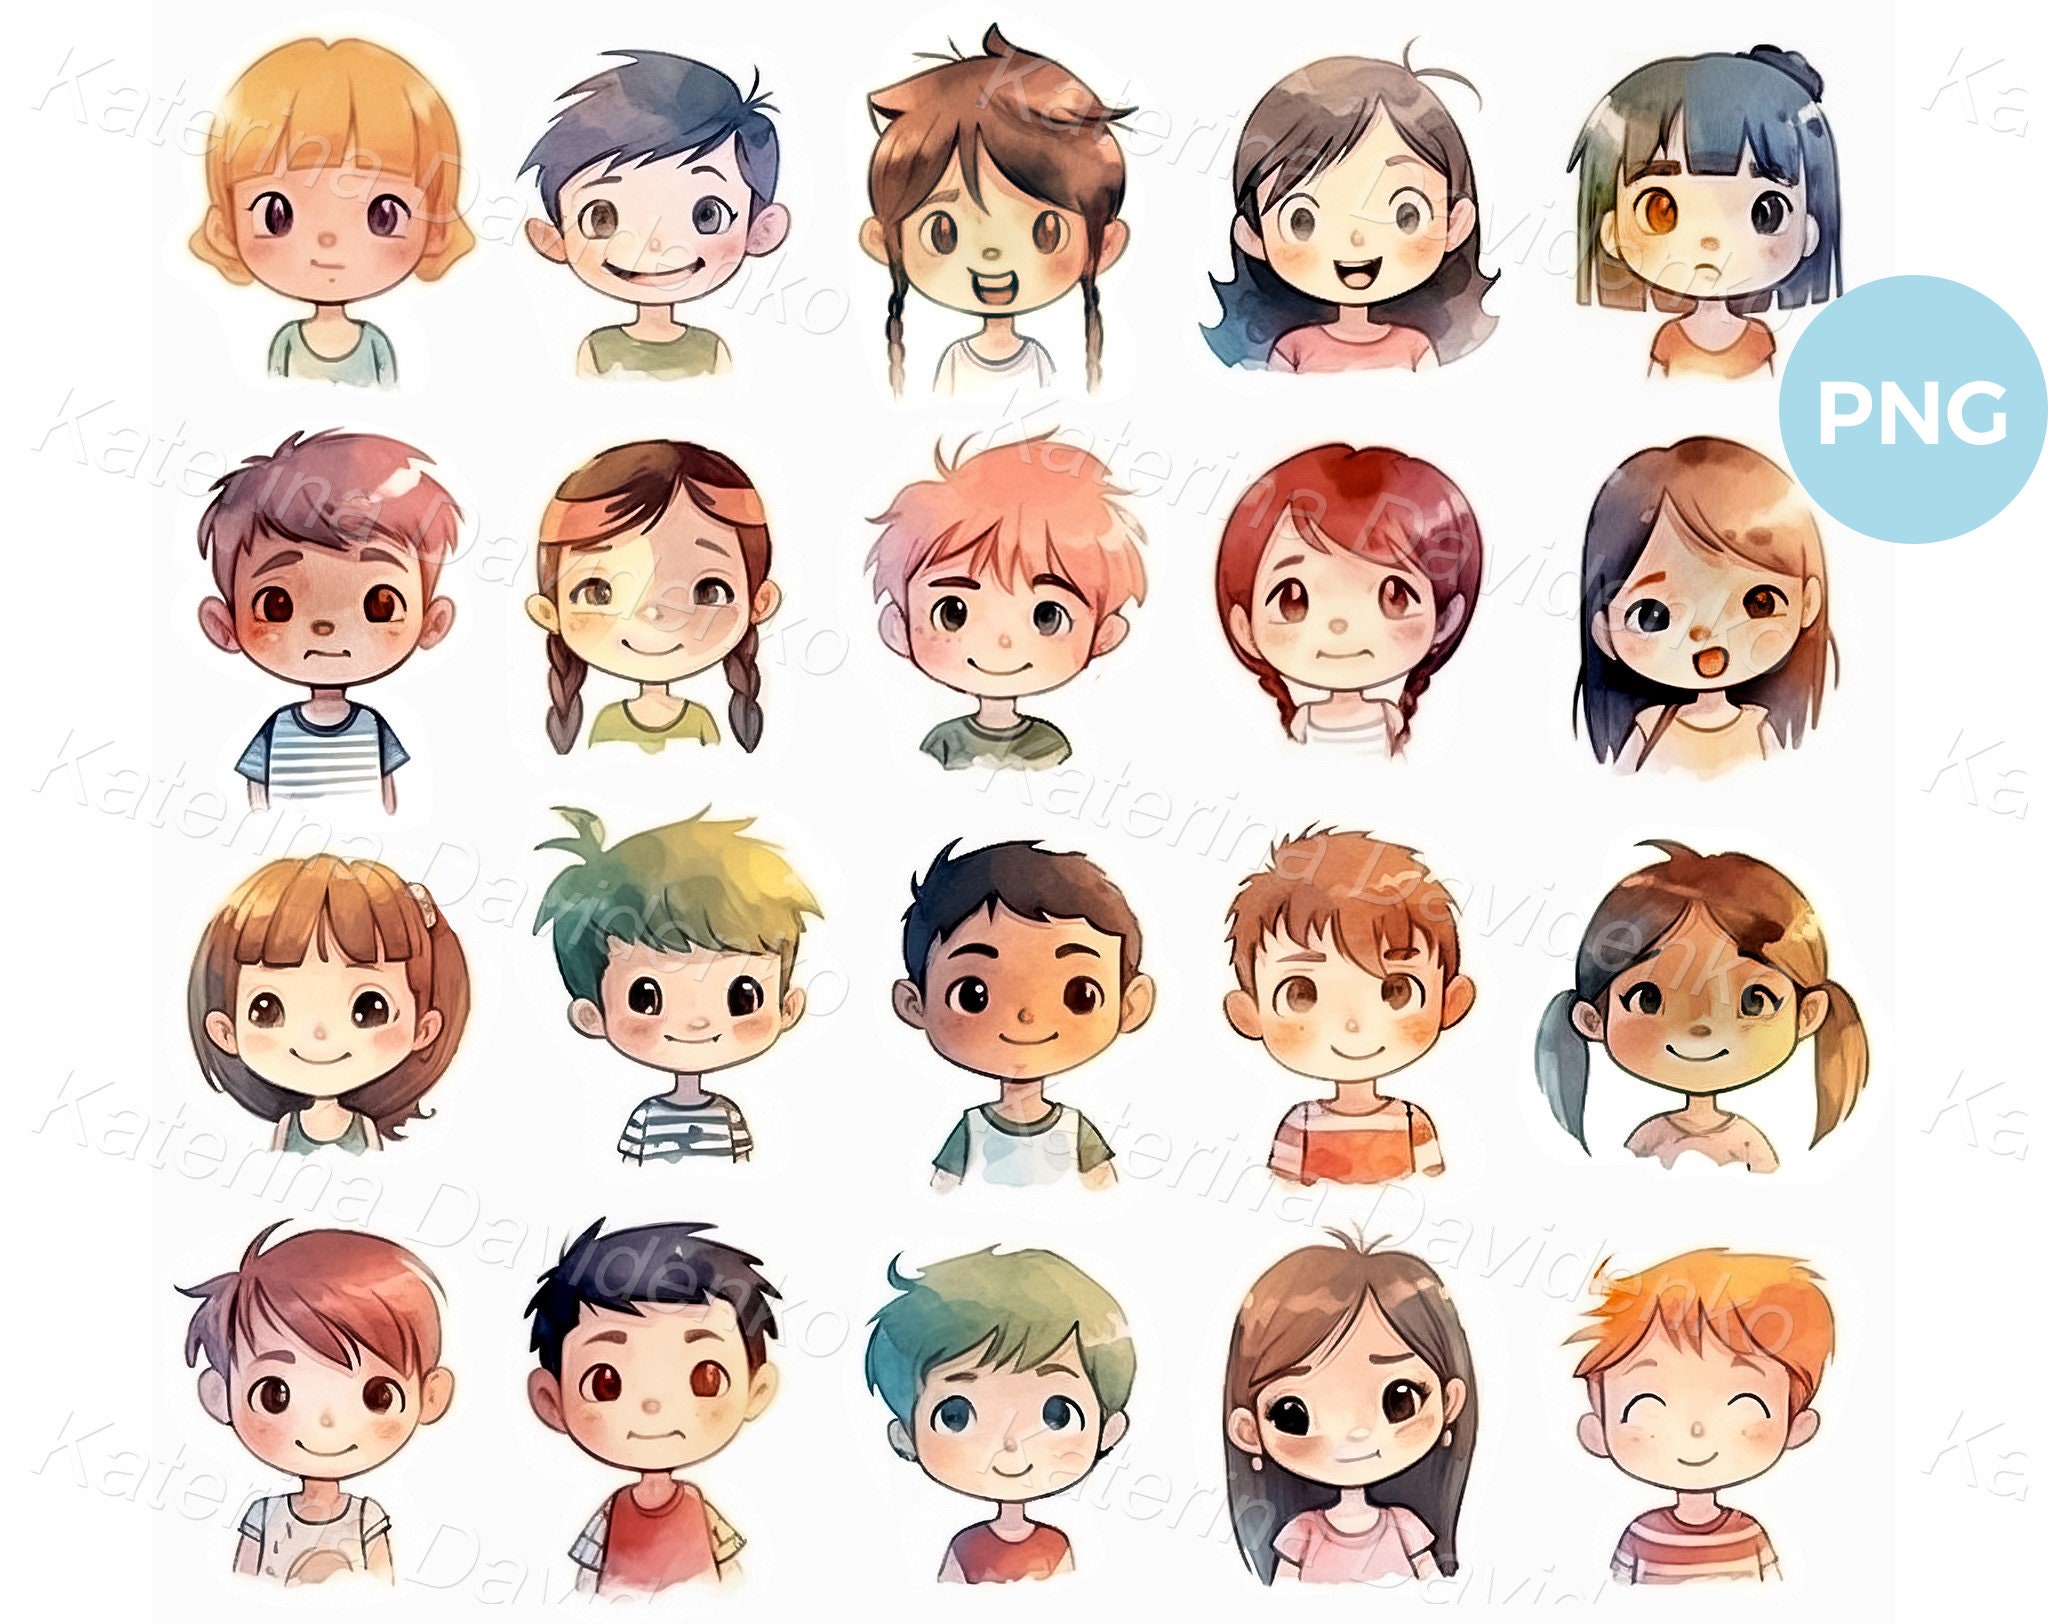 Anime faces, different expressions, emotions, chibi; How to Draw Manga/Anime  | Anime, Nhật ký nghệ thuật, Hình vẽ khuôn mặt